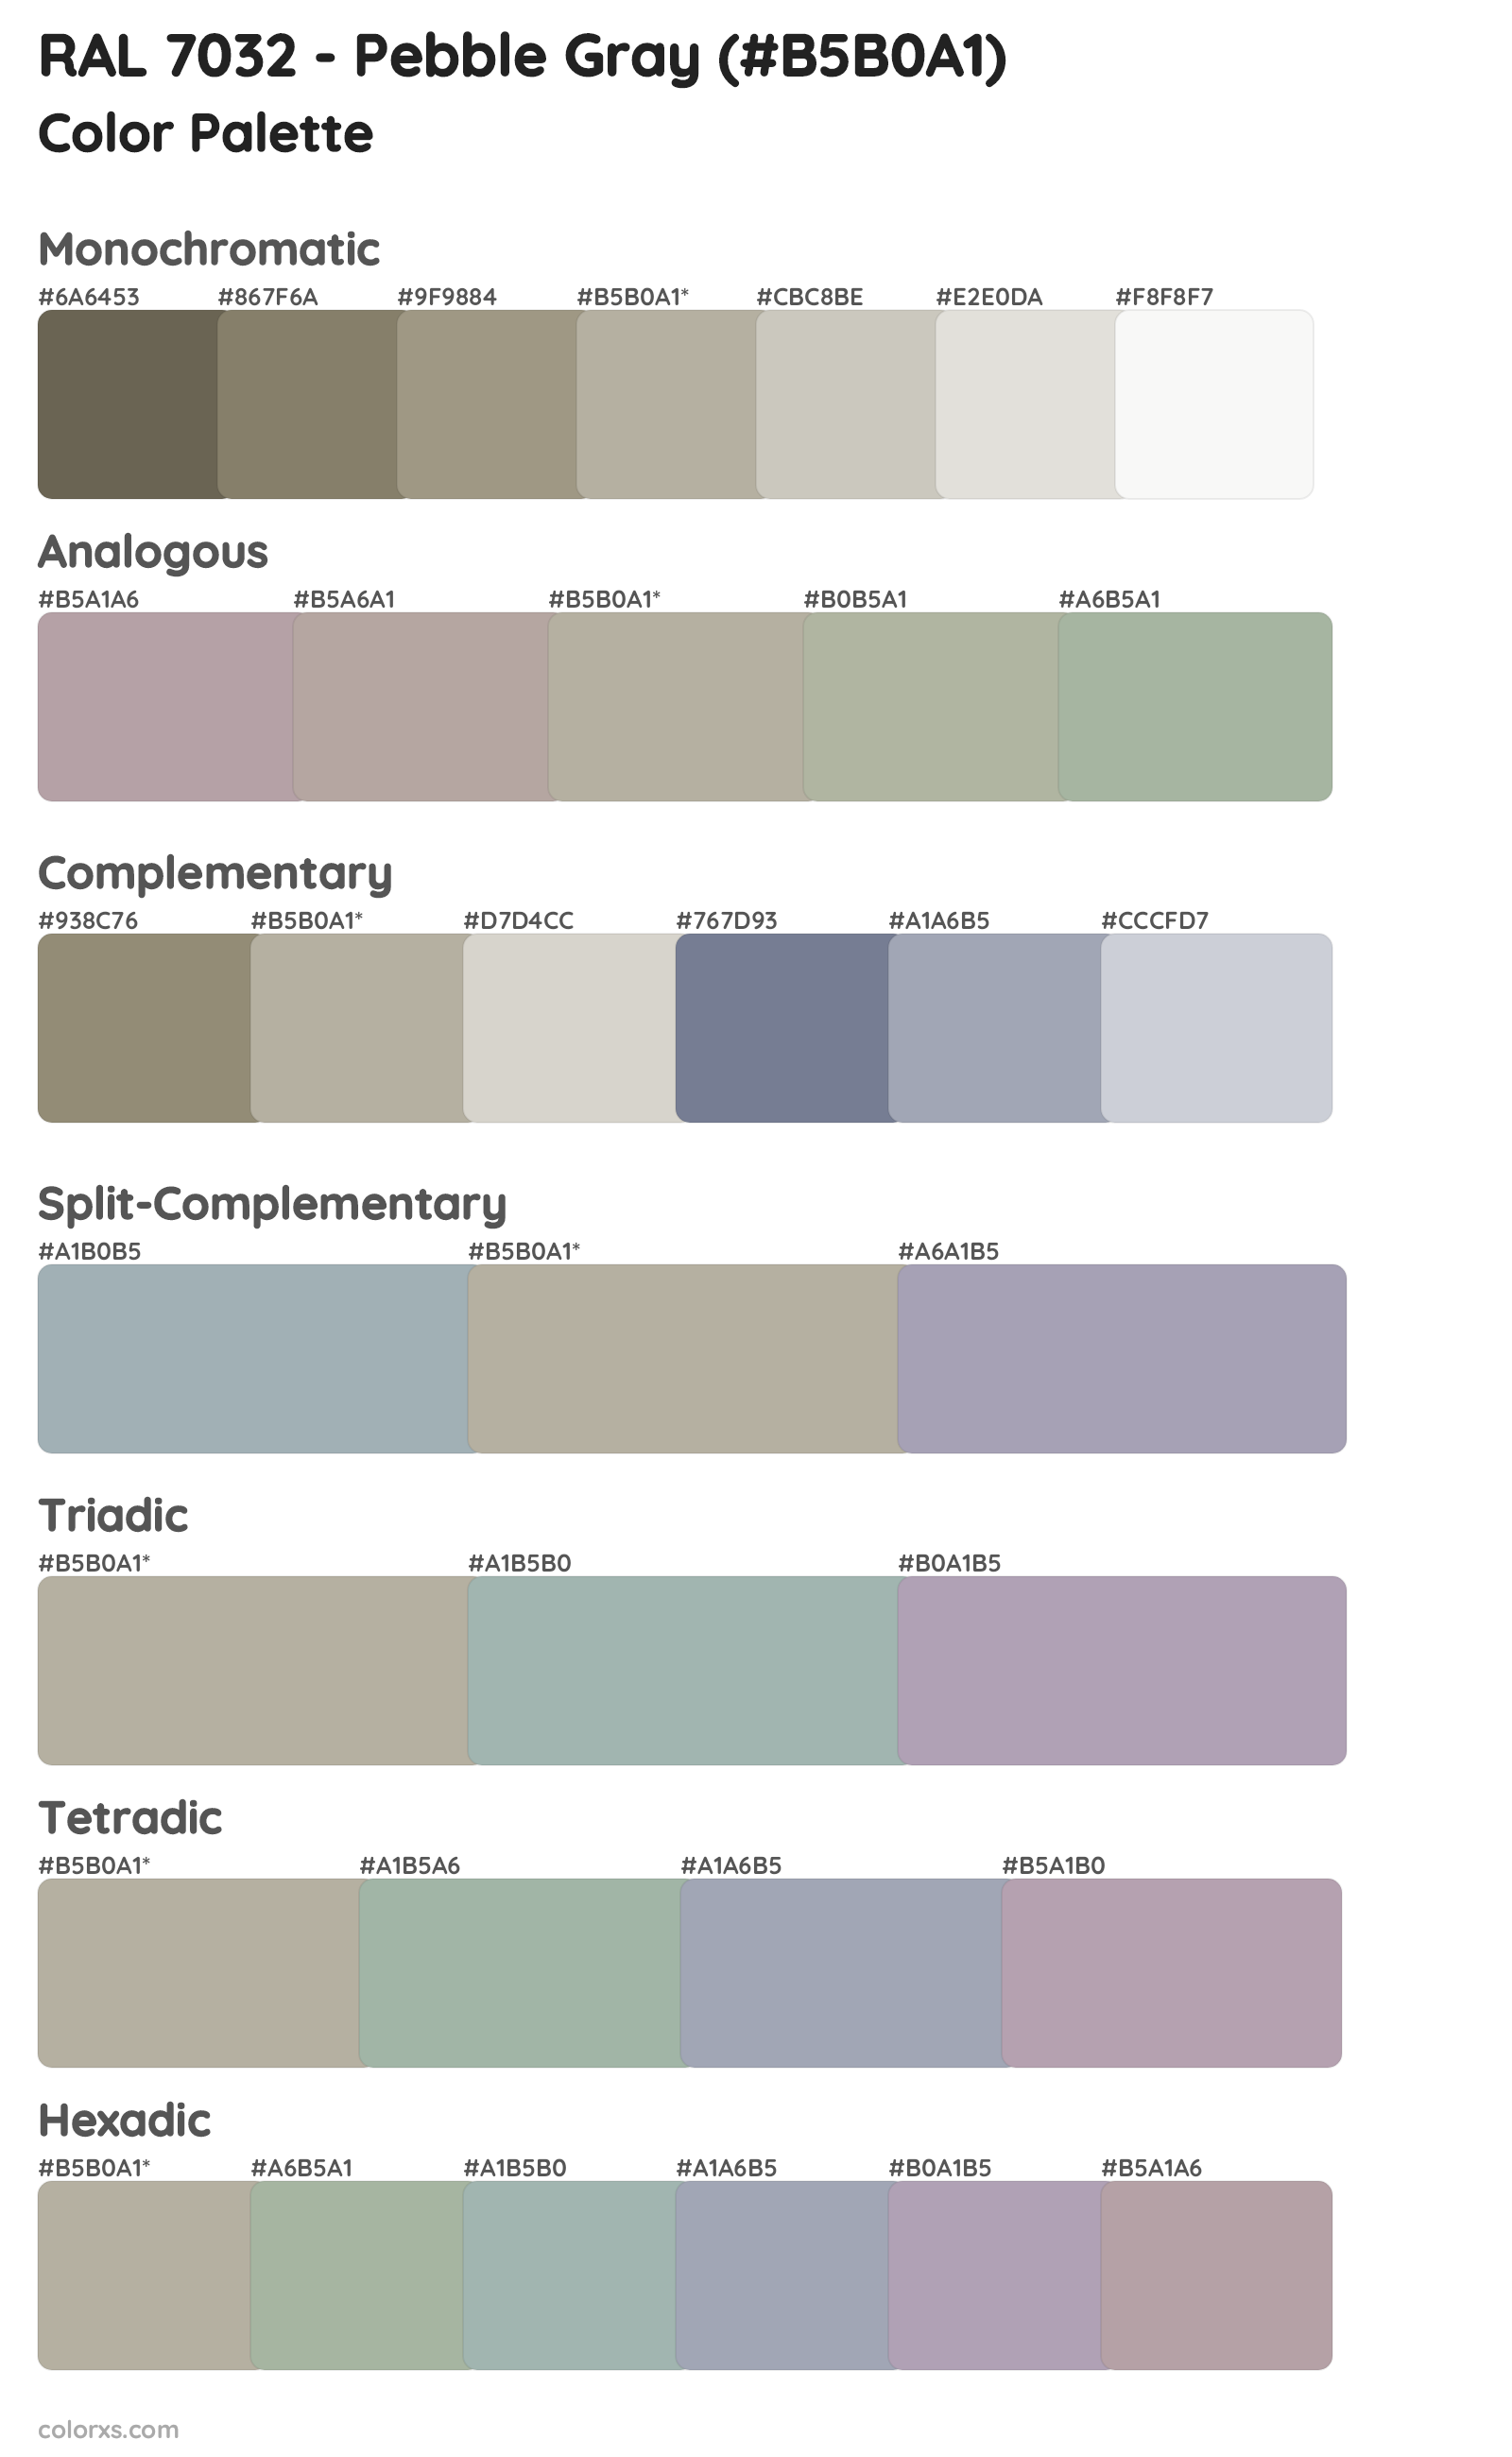 RAL 7032 - Pebble Gray Color Scheme Palettes